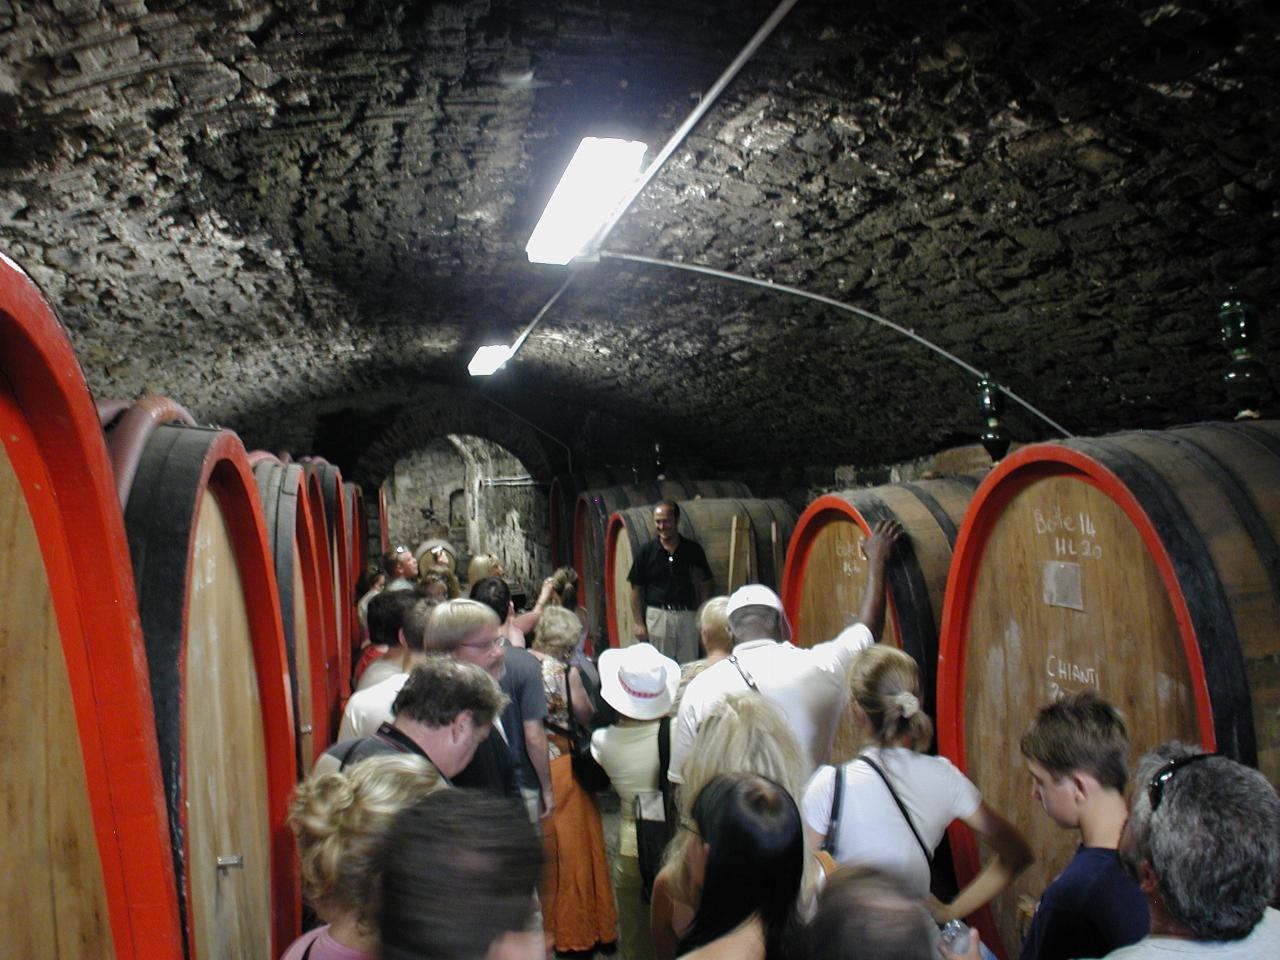 Cellar of Castello del Trebbio